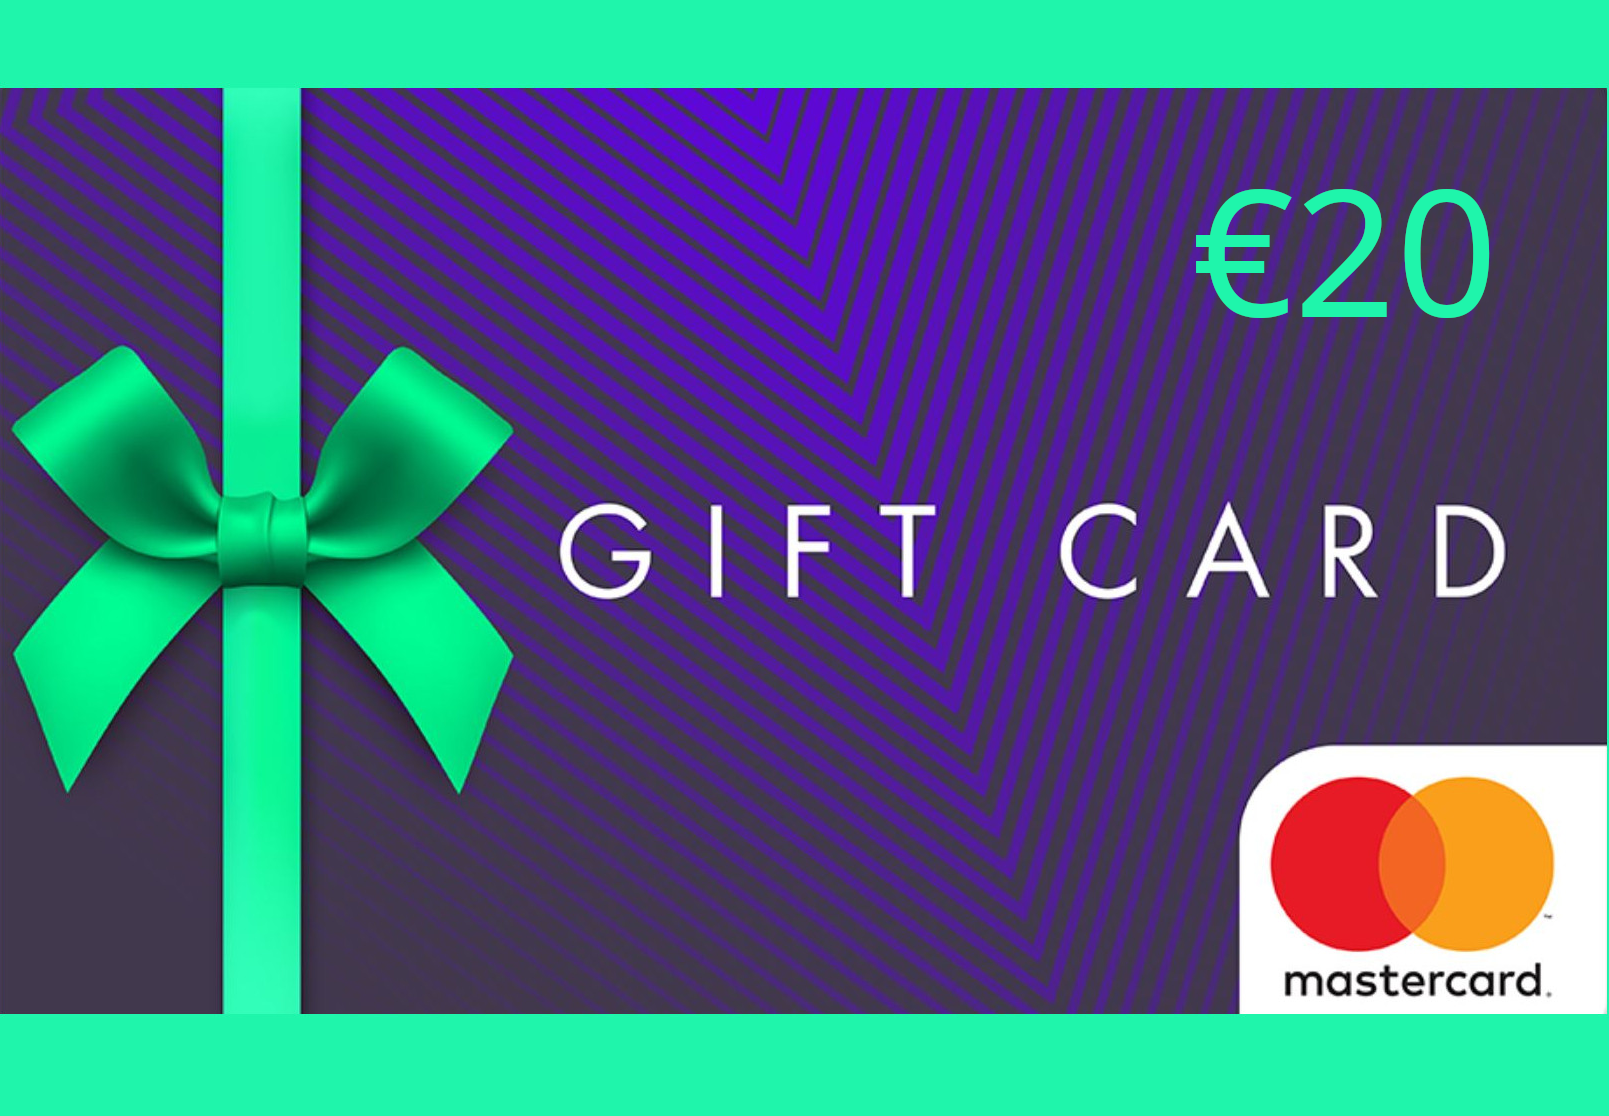 Mastercard Gift Card €20 EU